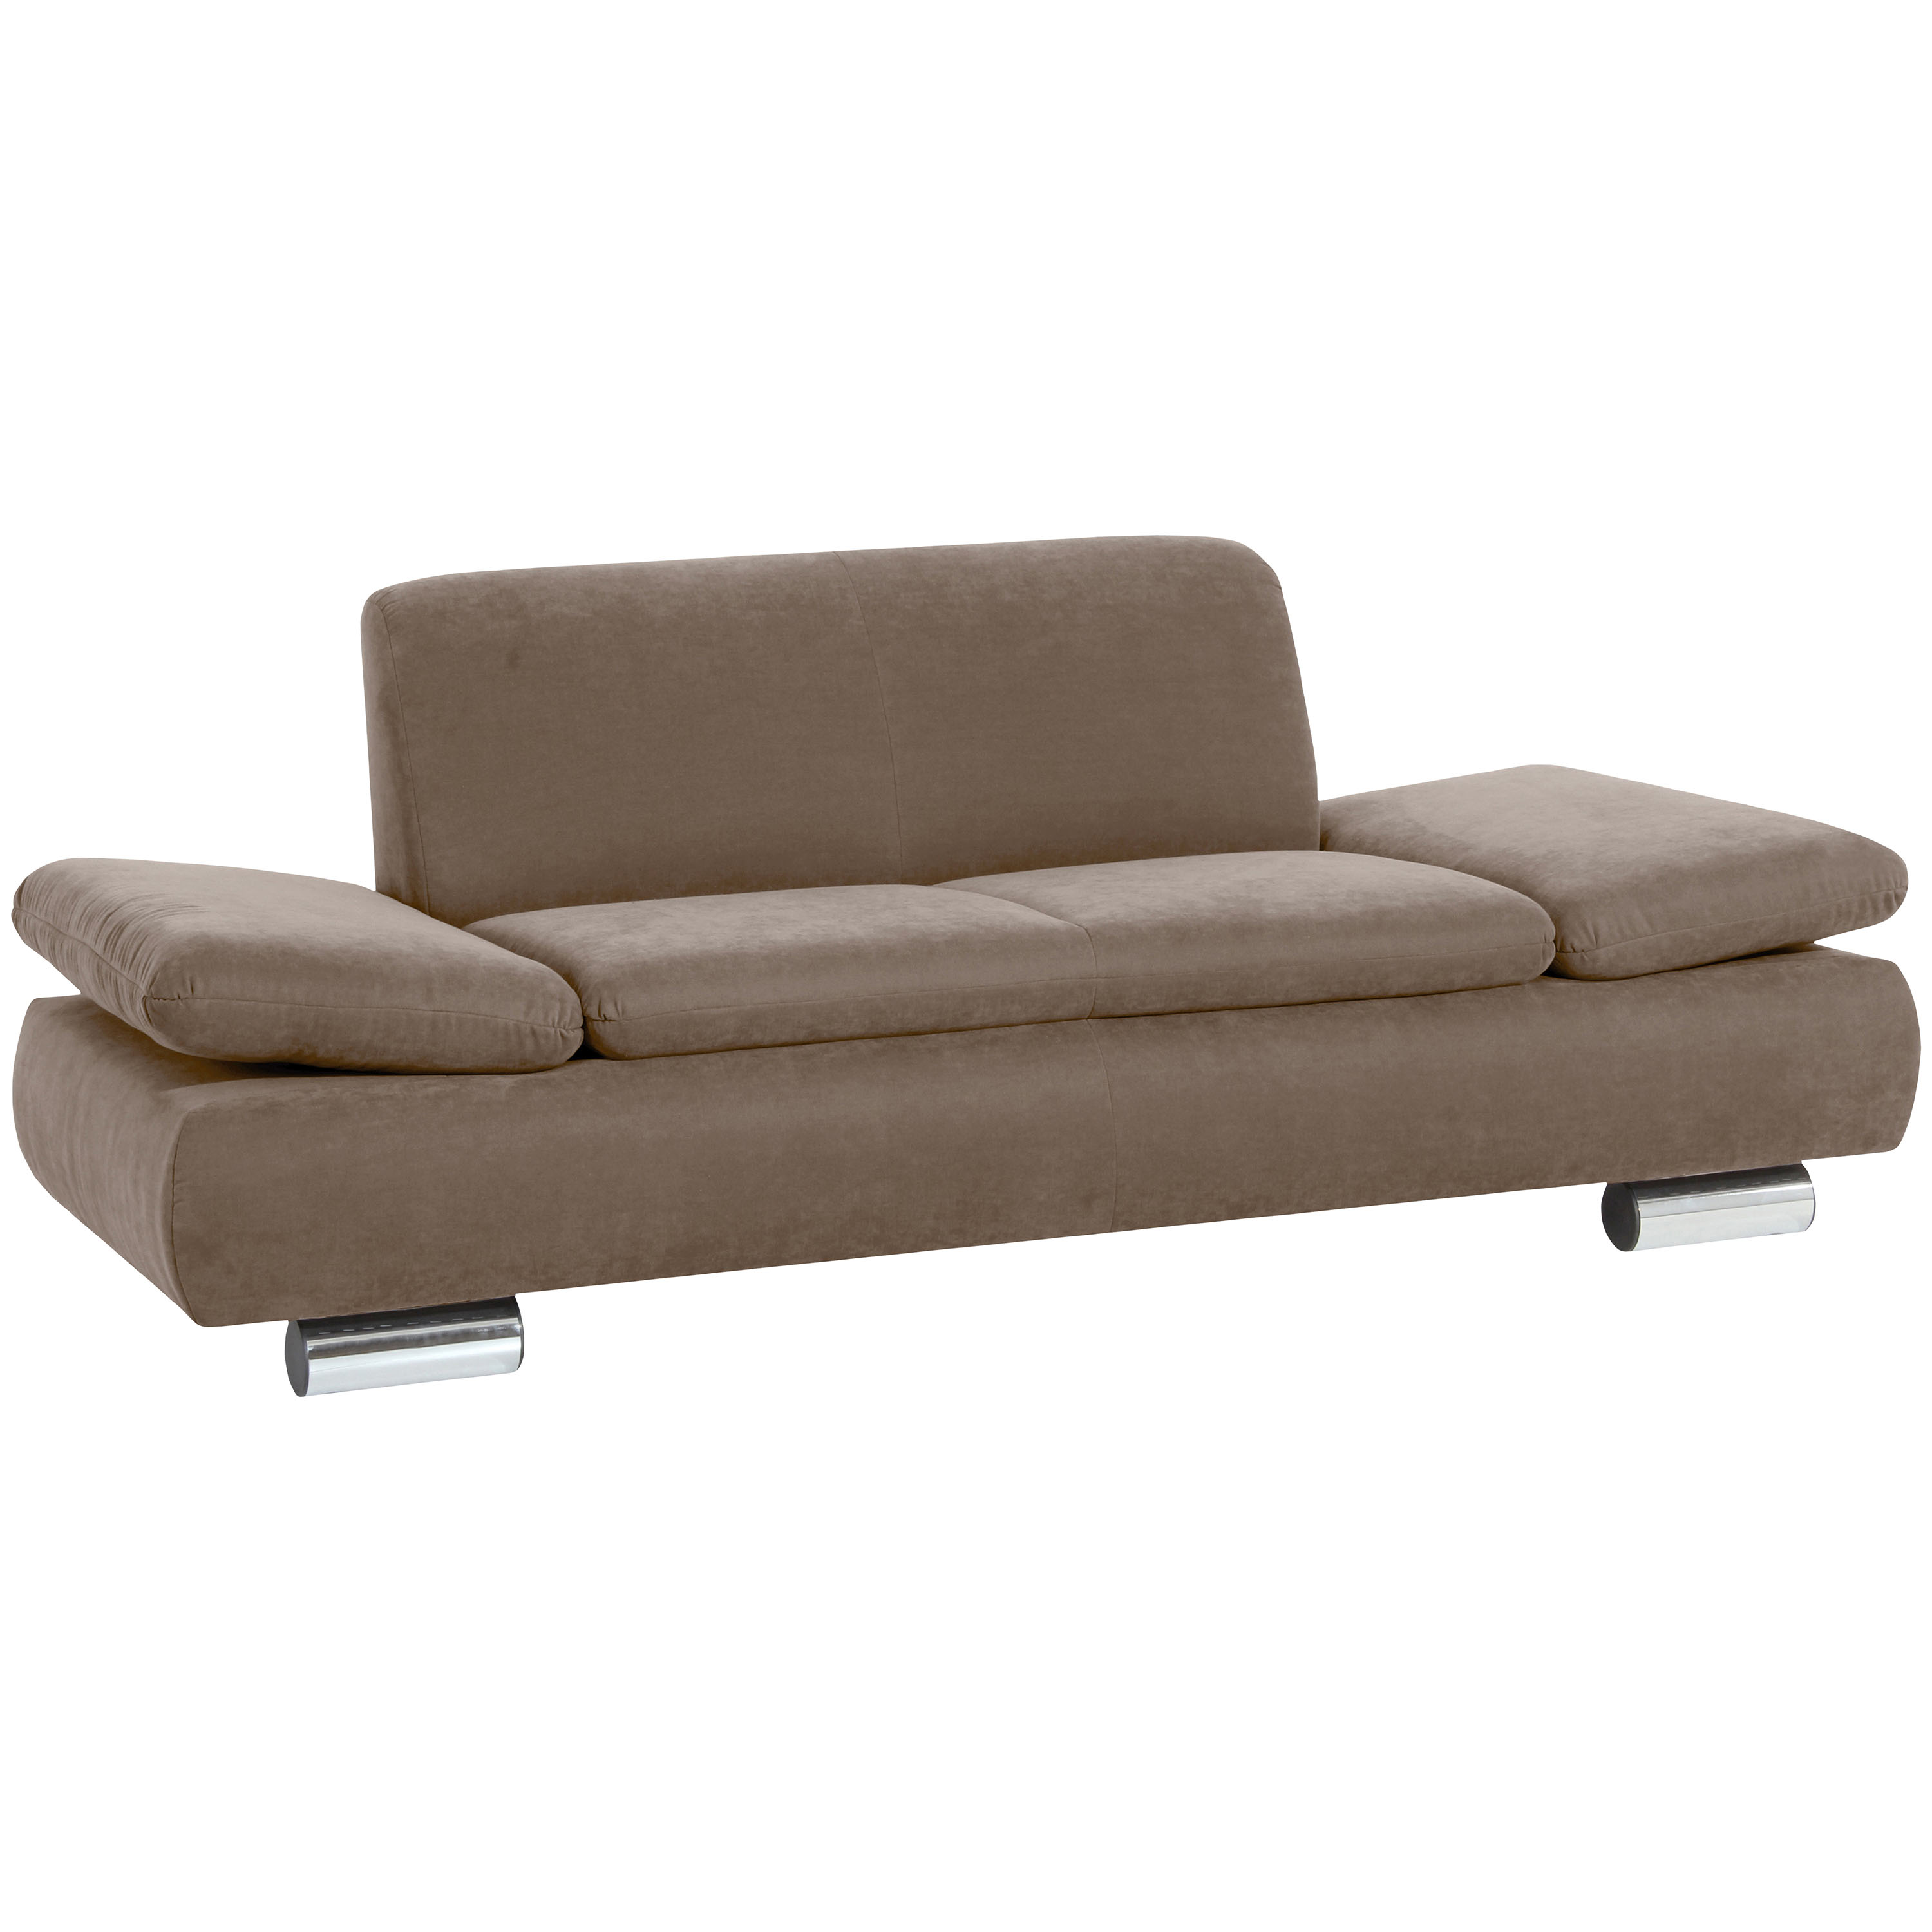 gemütliches 2-sitzer sofa im farbton sahara und verchromten metallfüssen